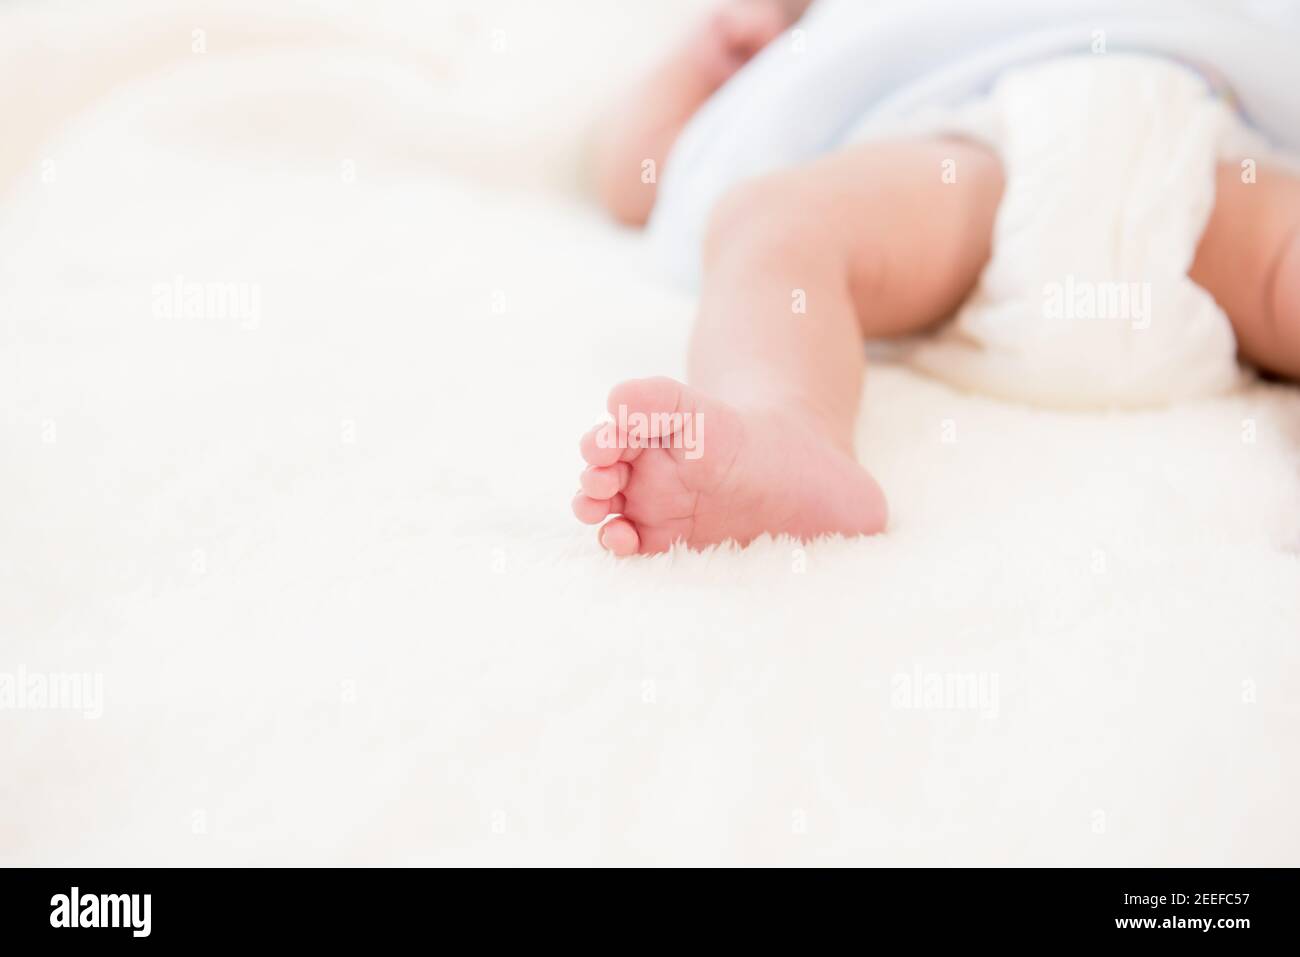 Kleiner kleiner kleiner Fuß des Neugeborenen auf weicher weißer Wolle Flusenblatt Stockfoto